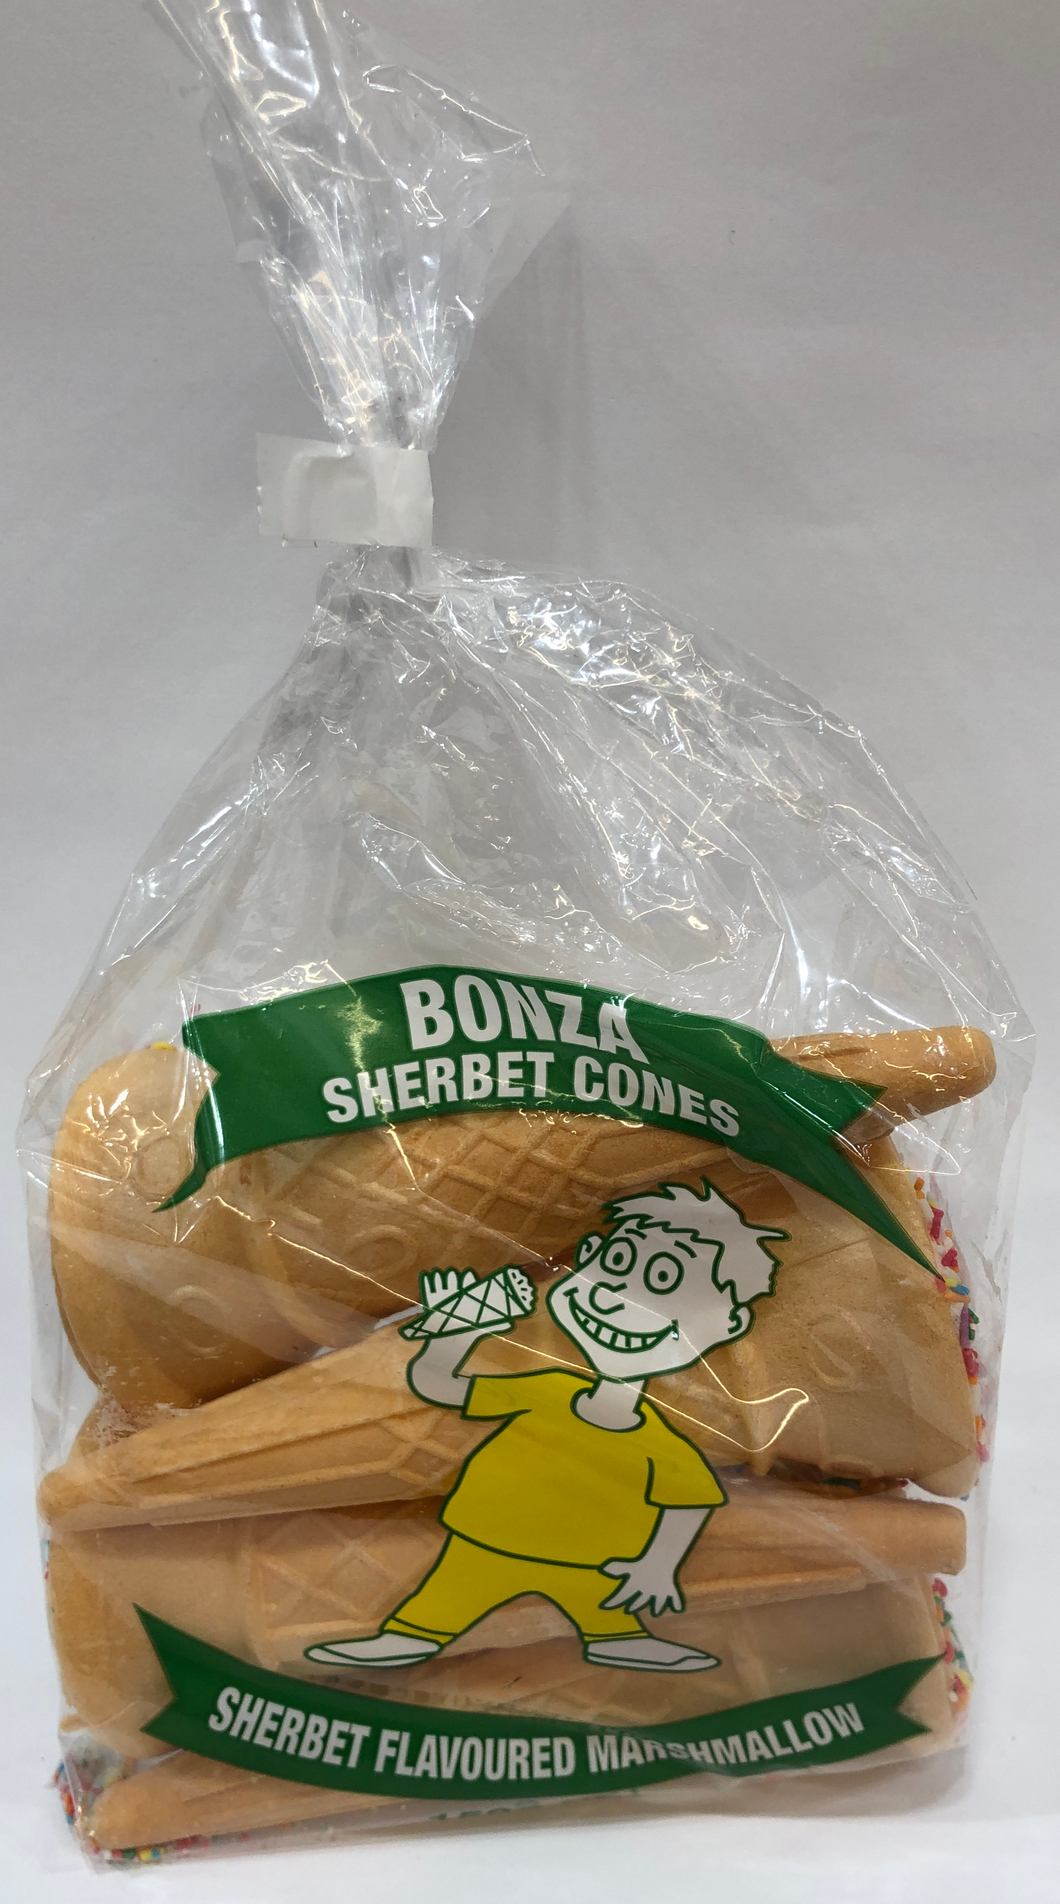 Bonza Sherbet Cones